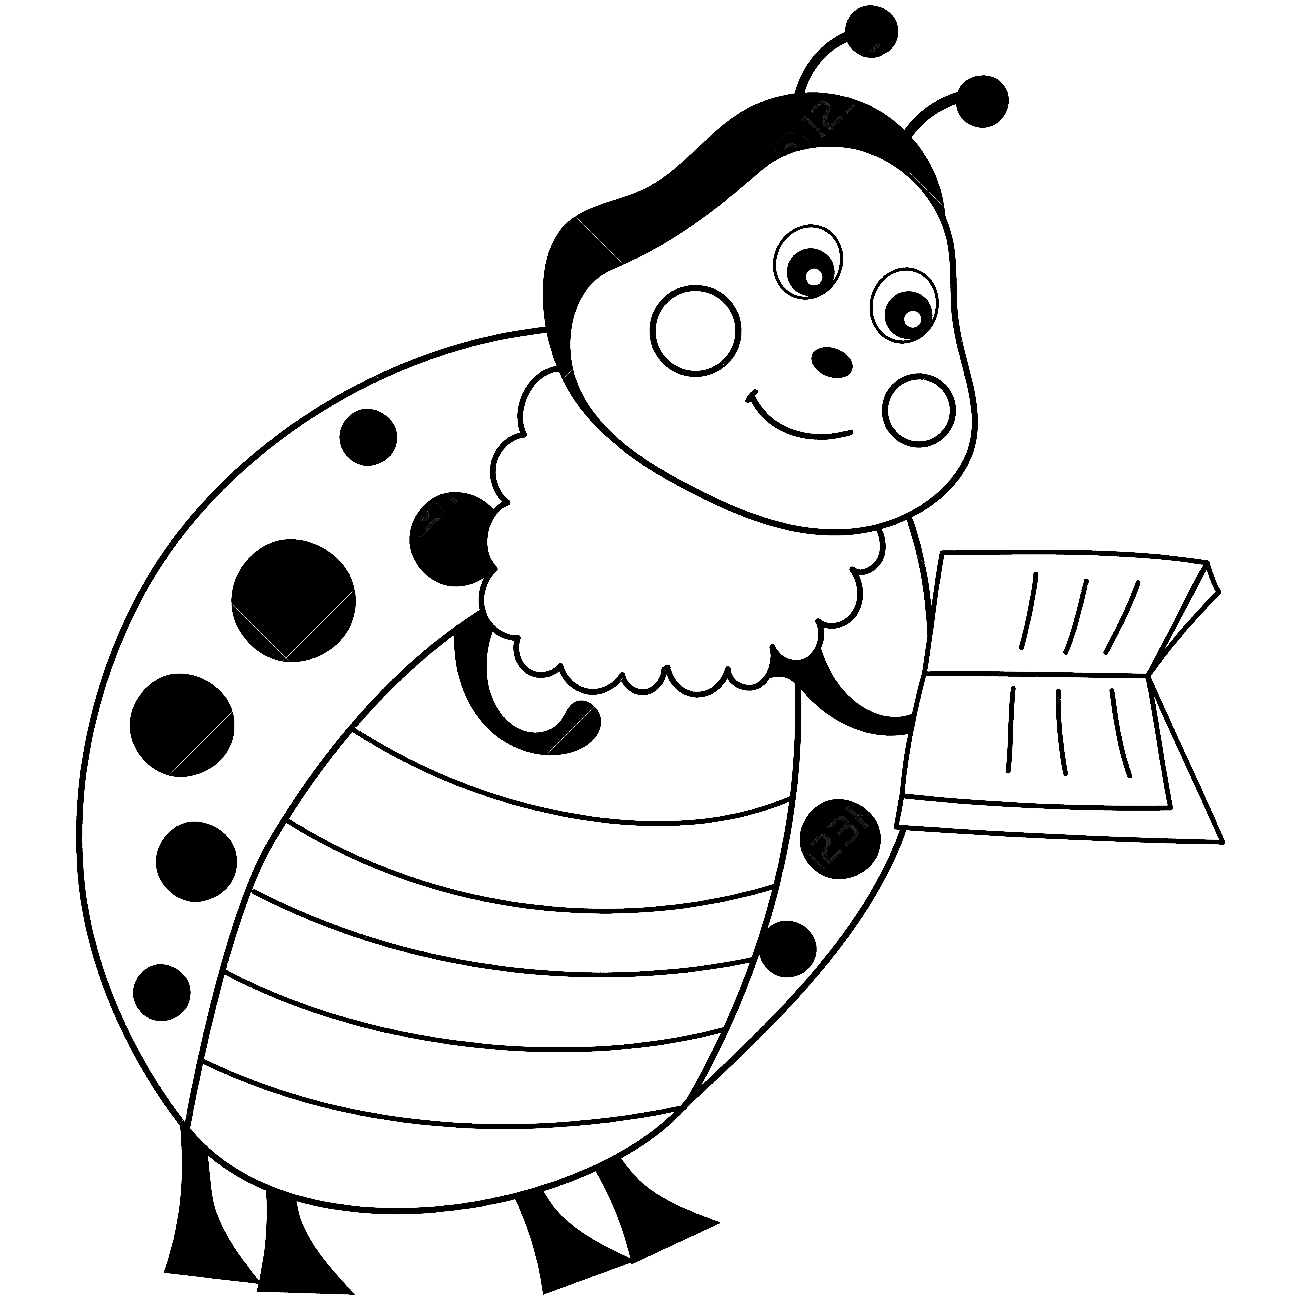 Ladybug With Book from Ladybug